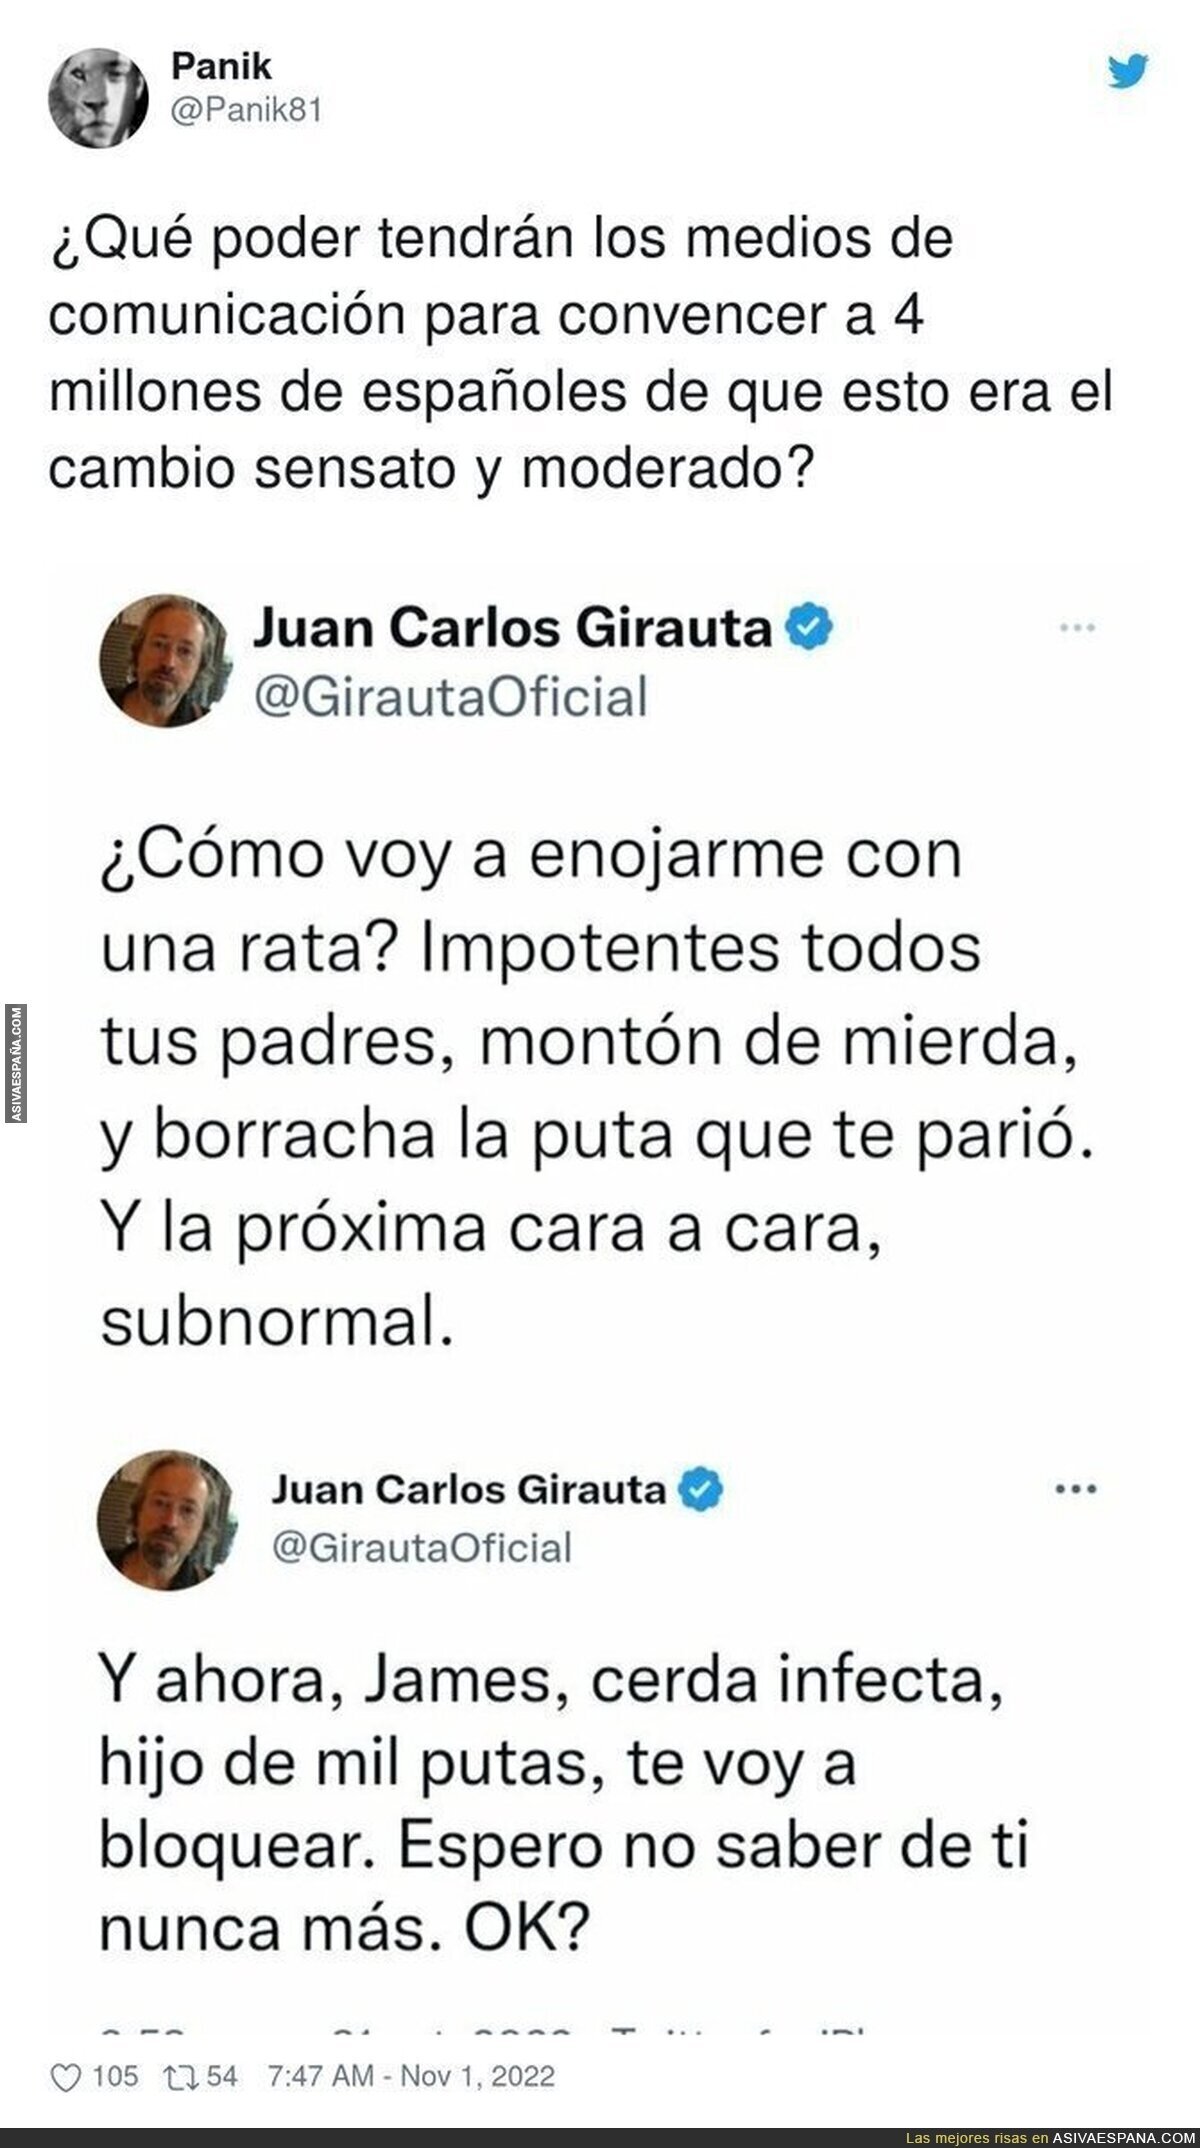 Juan Carlos Girauta carga contra James Rhodes de la forma más baja posible